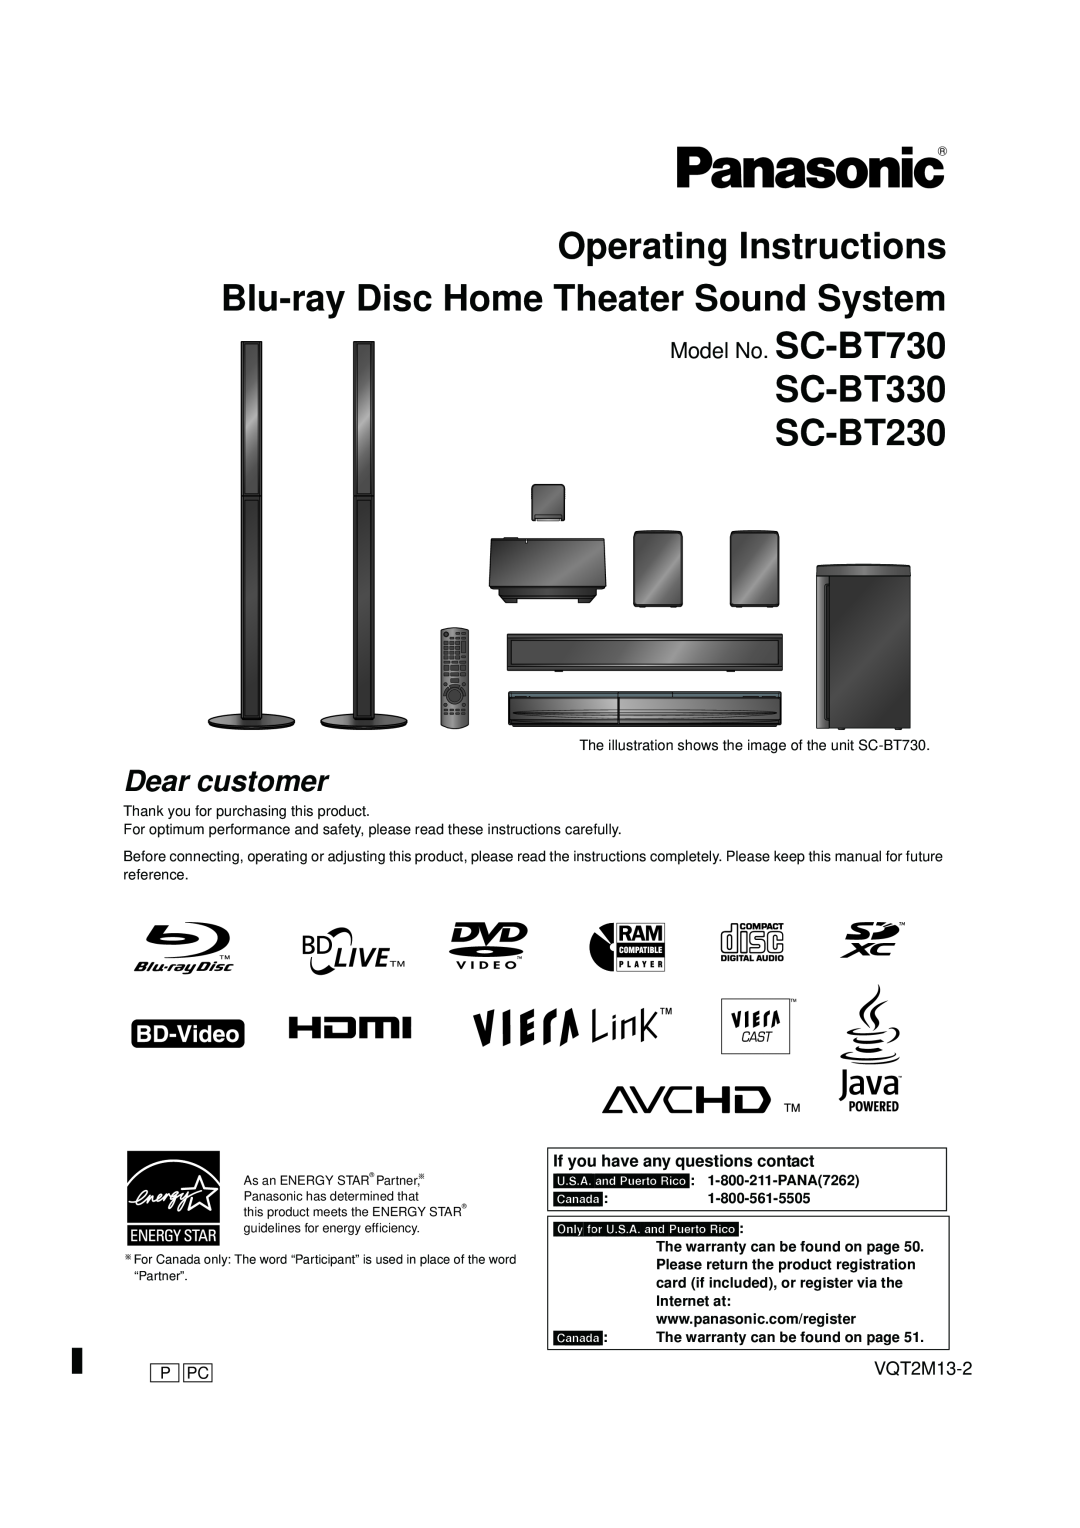 Panasonic operating instructions SC-BT330 SC-BT230, Model No. SC-BT730 